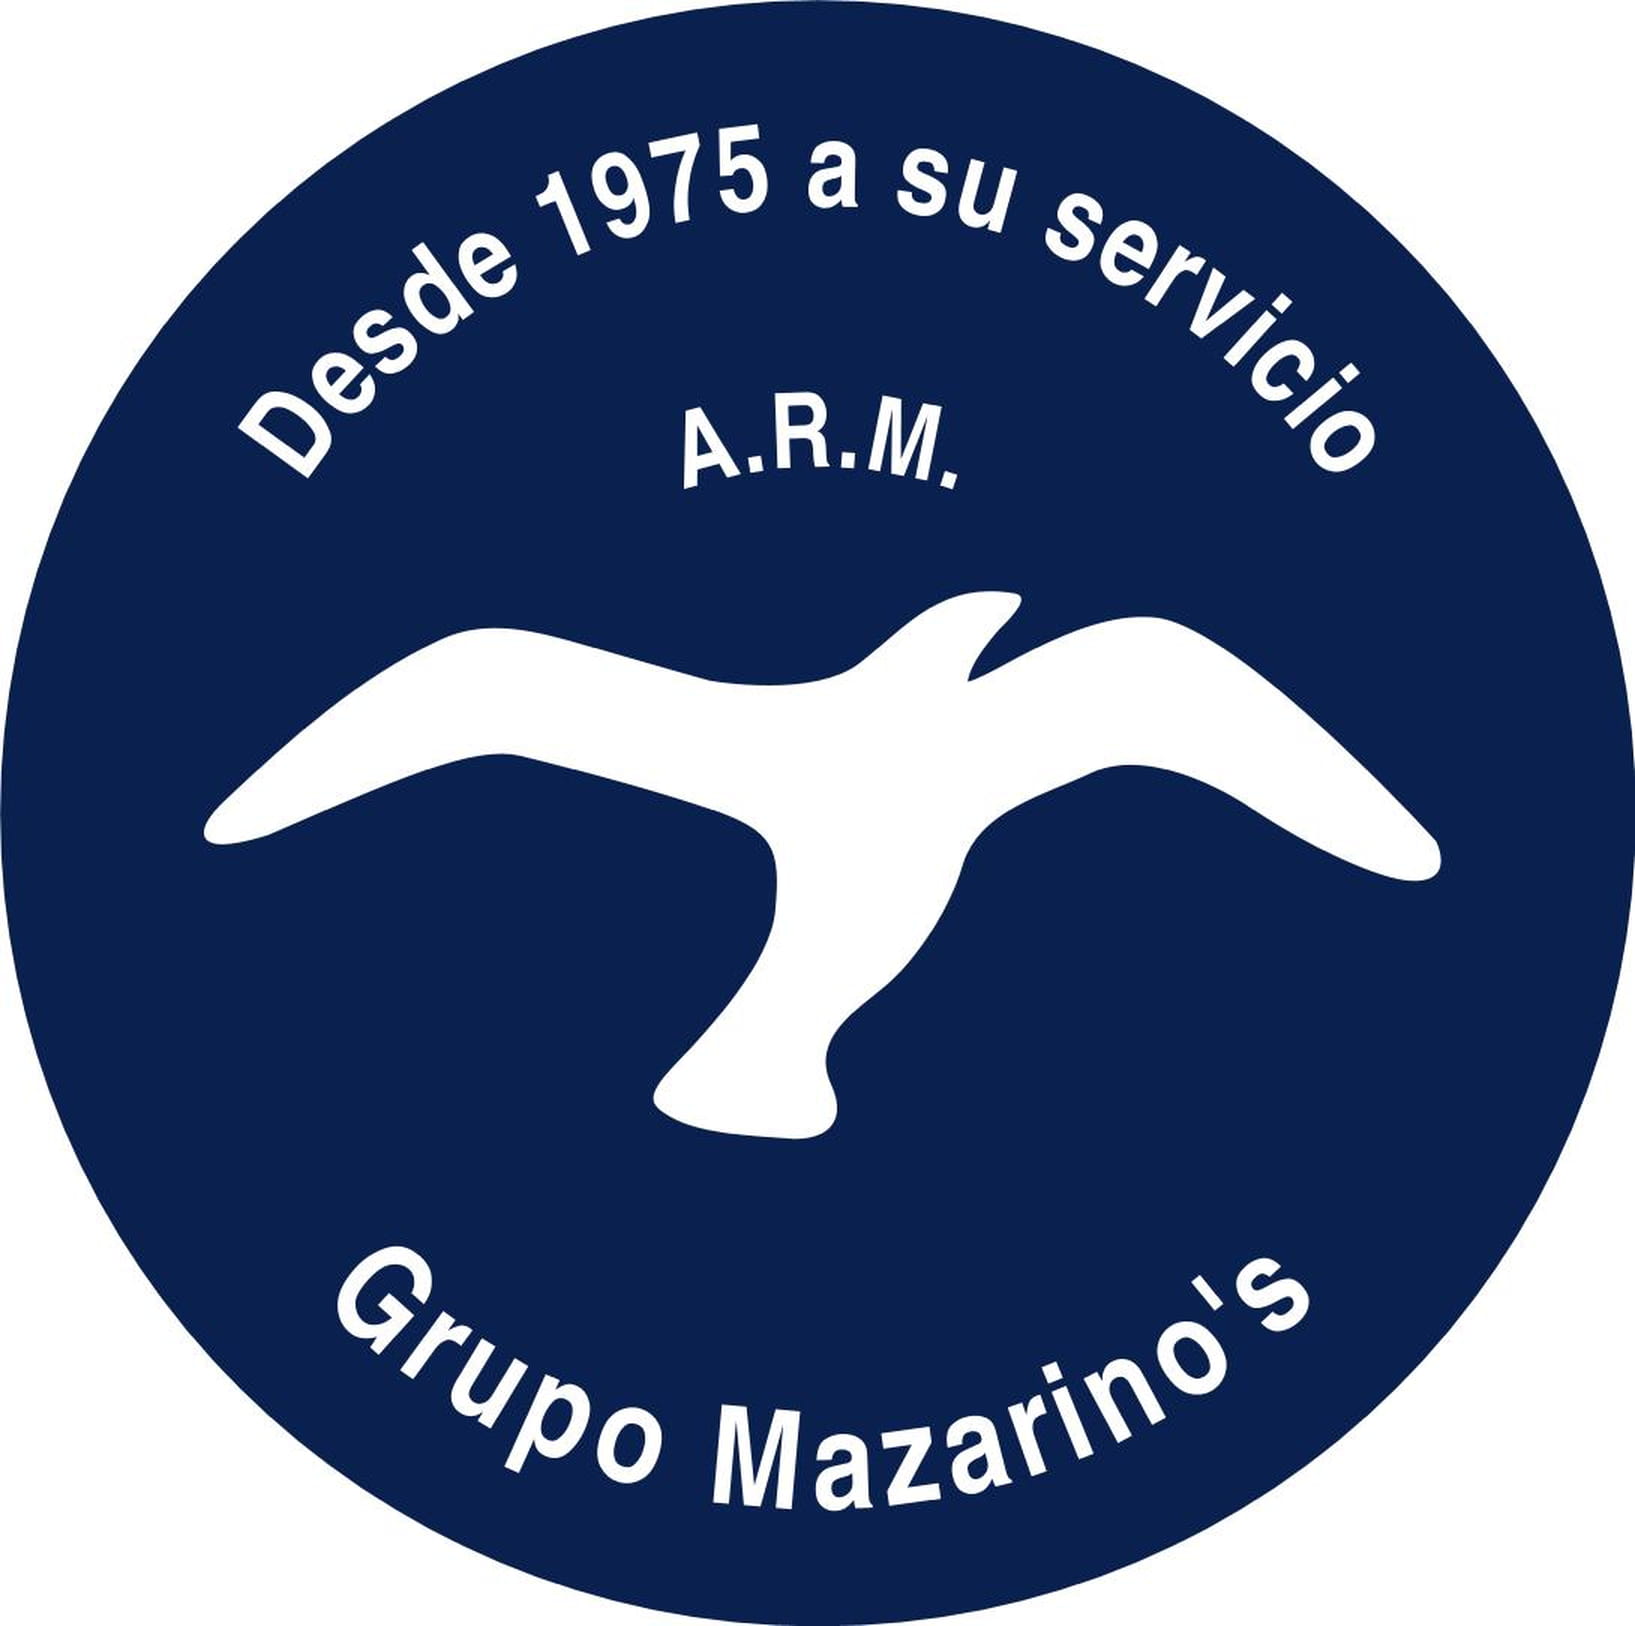 Grupo Mazarinos. Desde 1975 a su servicio